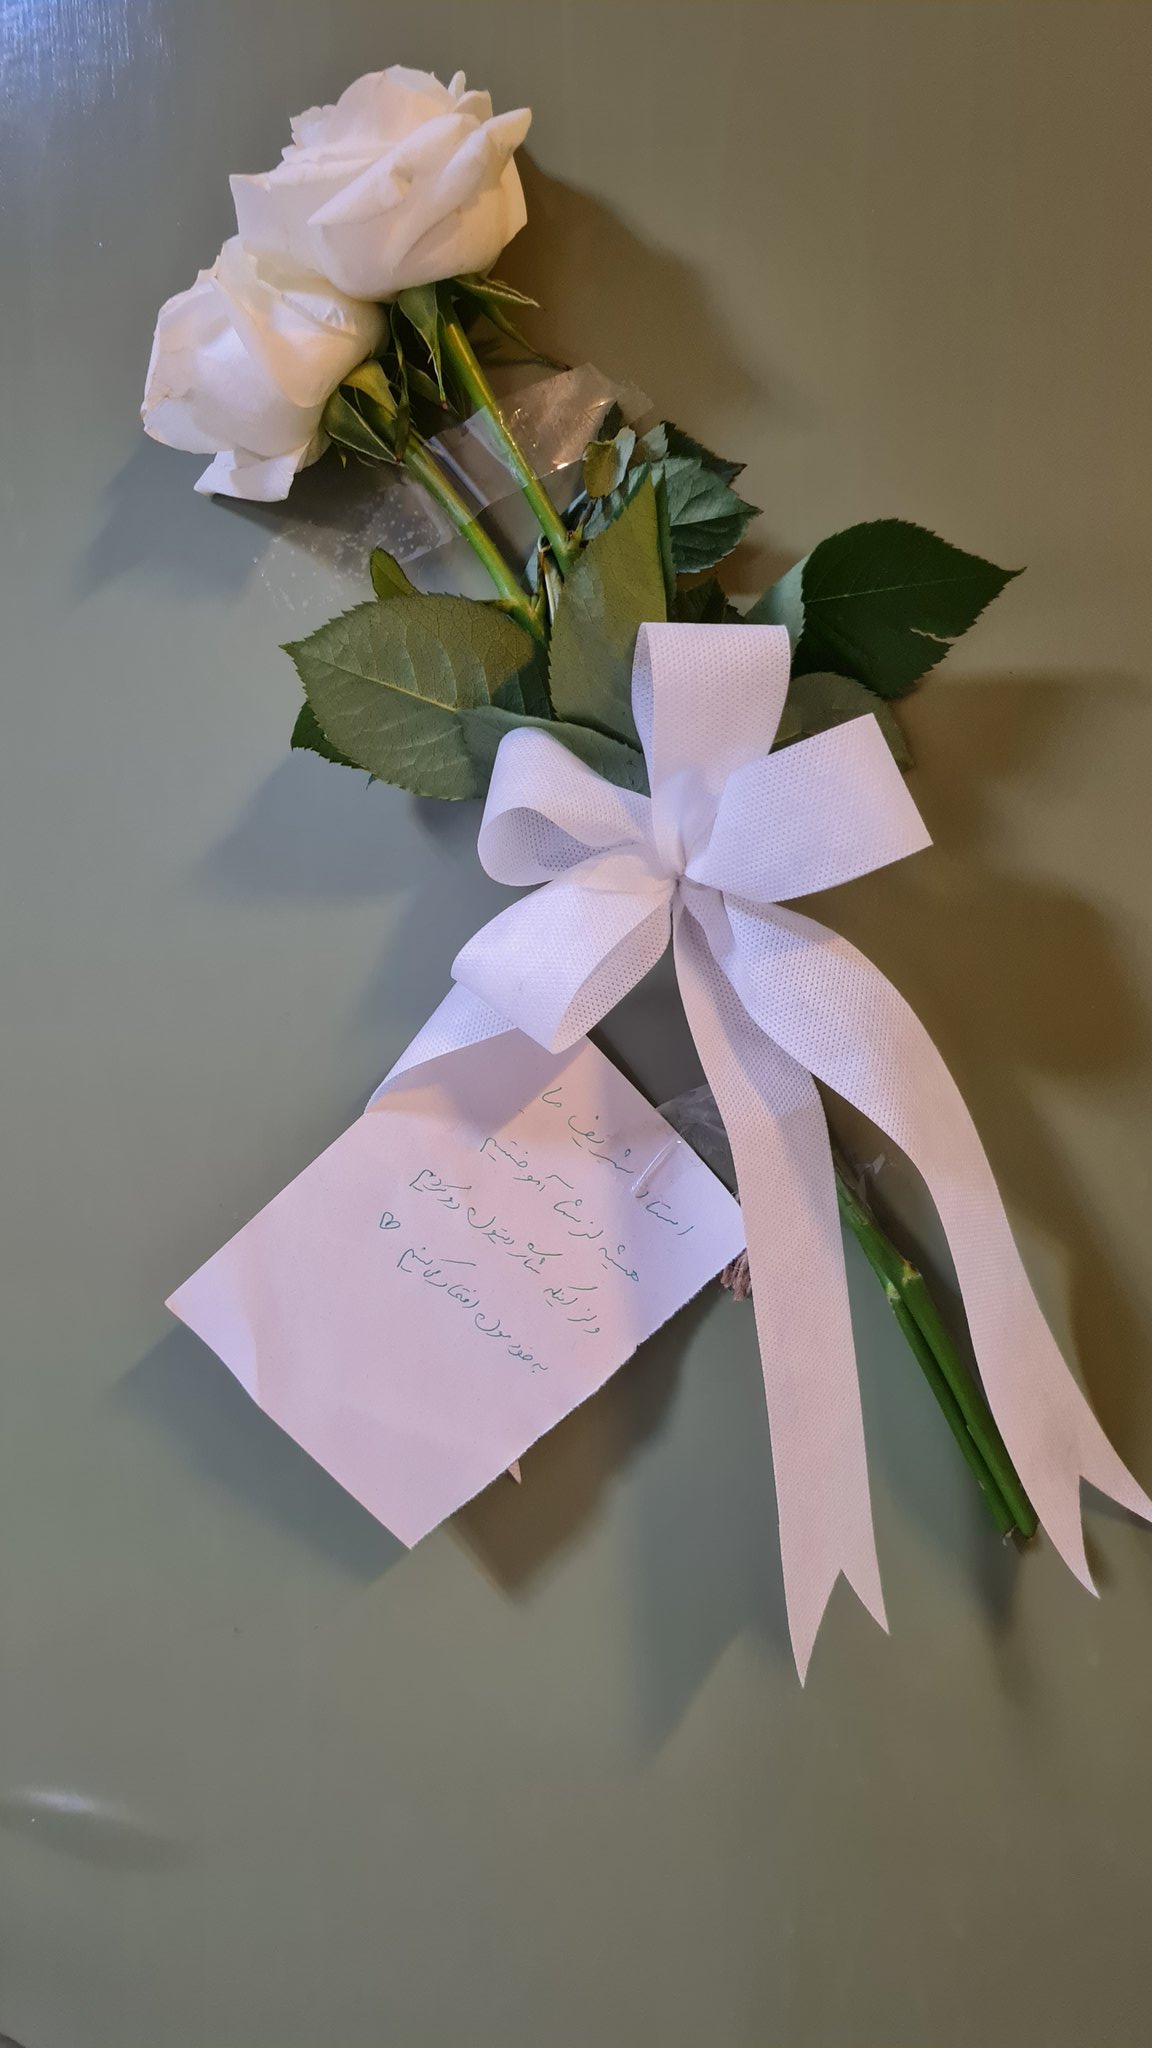 واکنش دانشجوها به اخراج استاد دانشگاه شریف؛ ارسال گل و یک نامه/ عکس